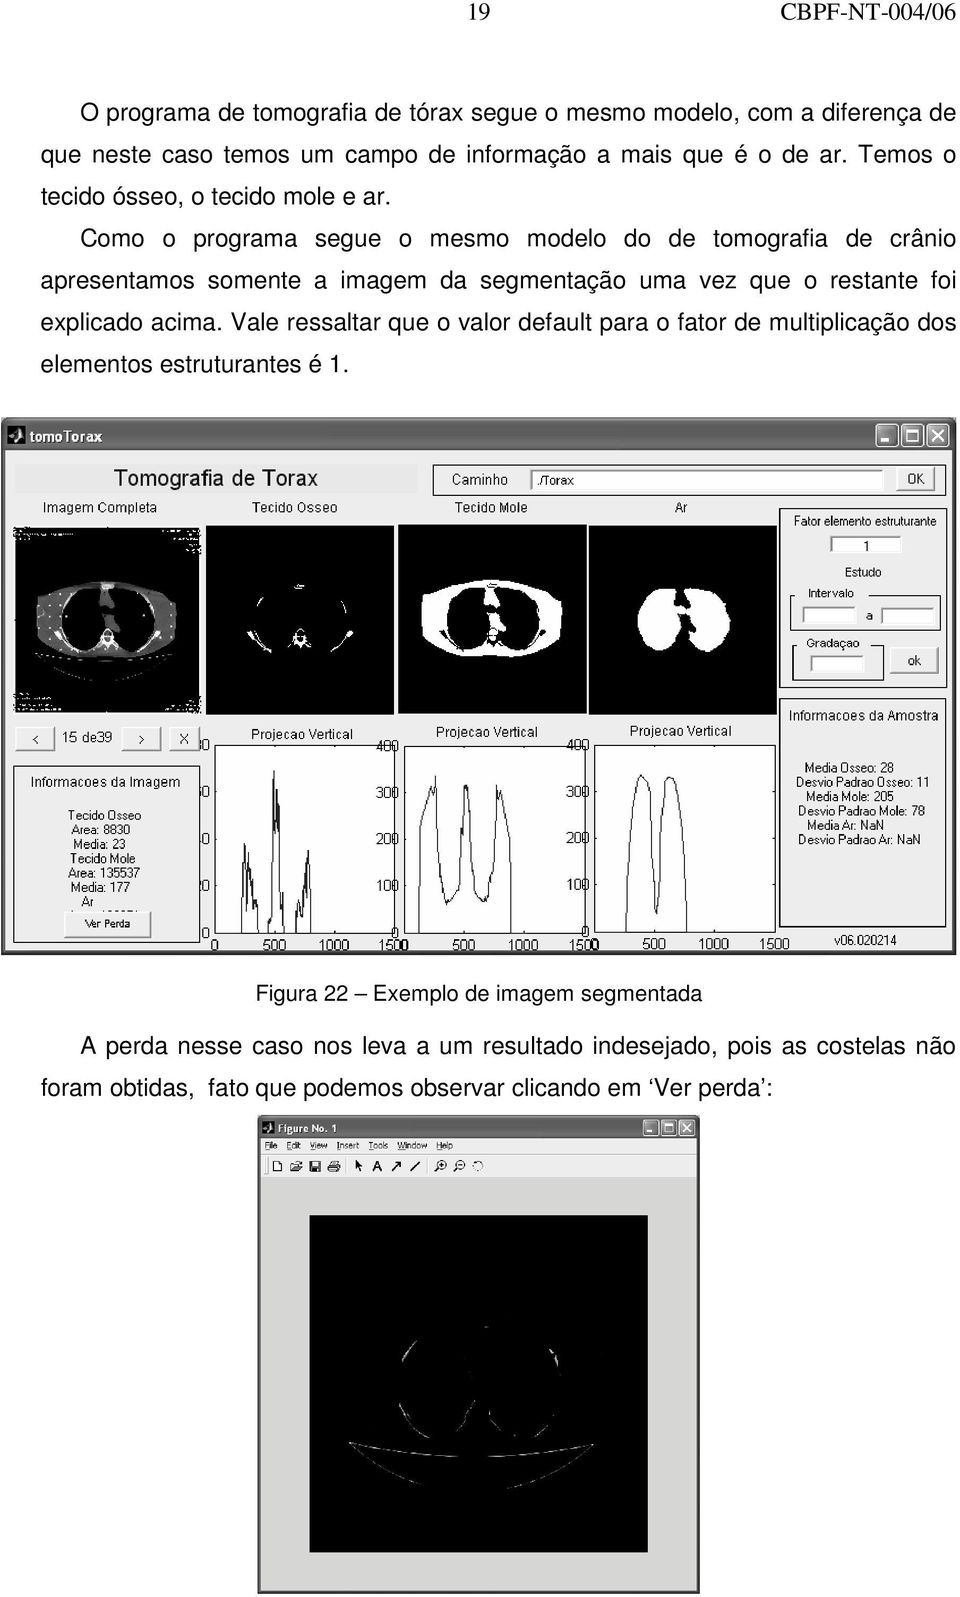 Como o programa segue o mesmo modelo do de tomografia de crânio apresentamos somente a imagem da segmentação uma vez que o restante foi explicado acima.